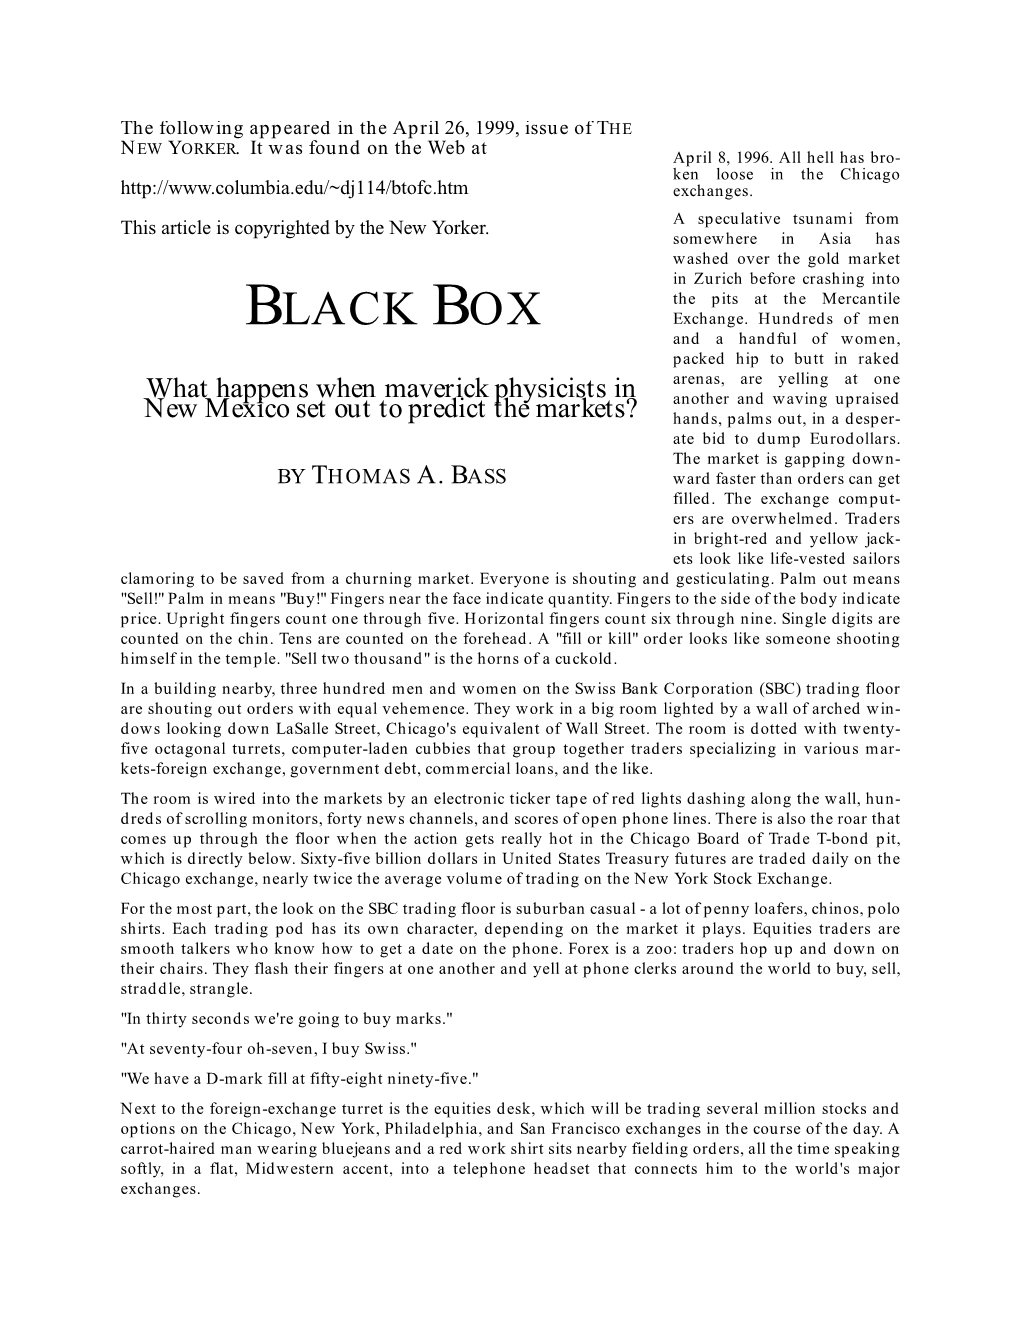 BLACK BOX Exchange